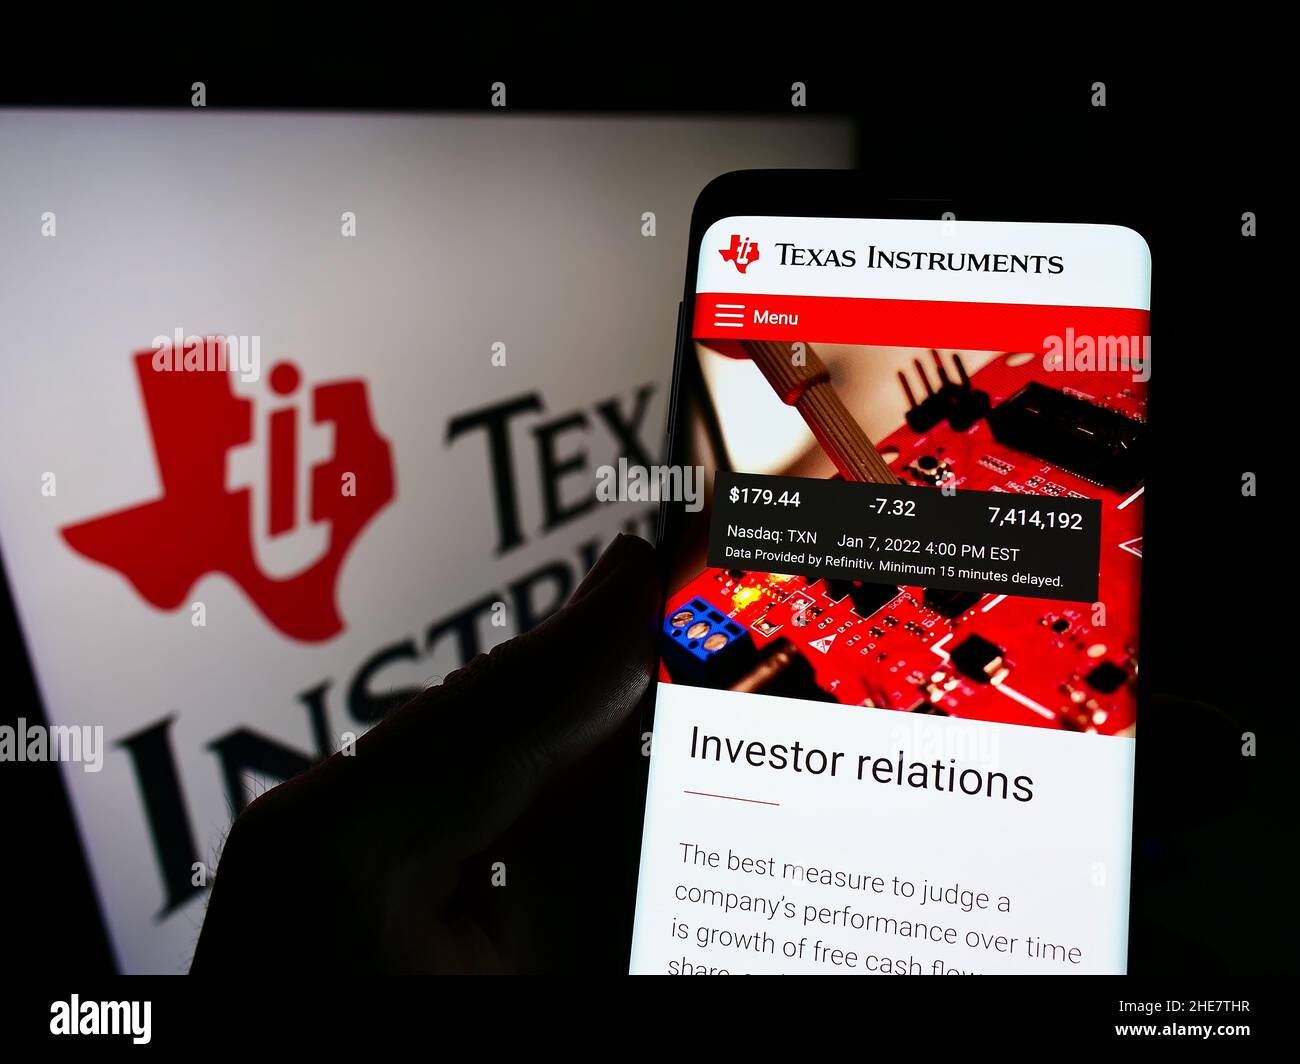 Persona che tiene il cellulare con il sito web della società statunitense Texas Instruments Incorporated (ti) sullo schermo con il logo. Concentrarsi sul centro del display del telefono. Foto Stock